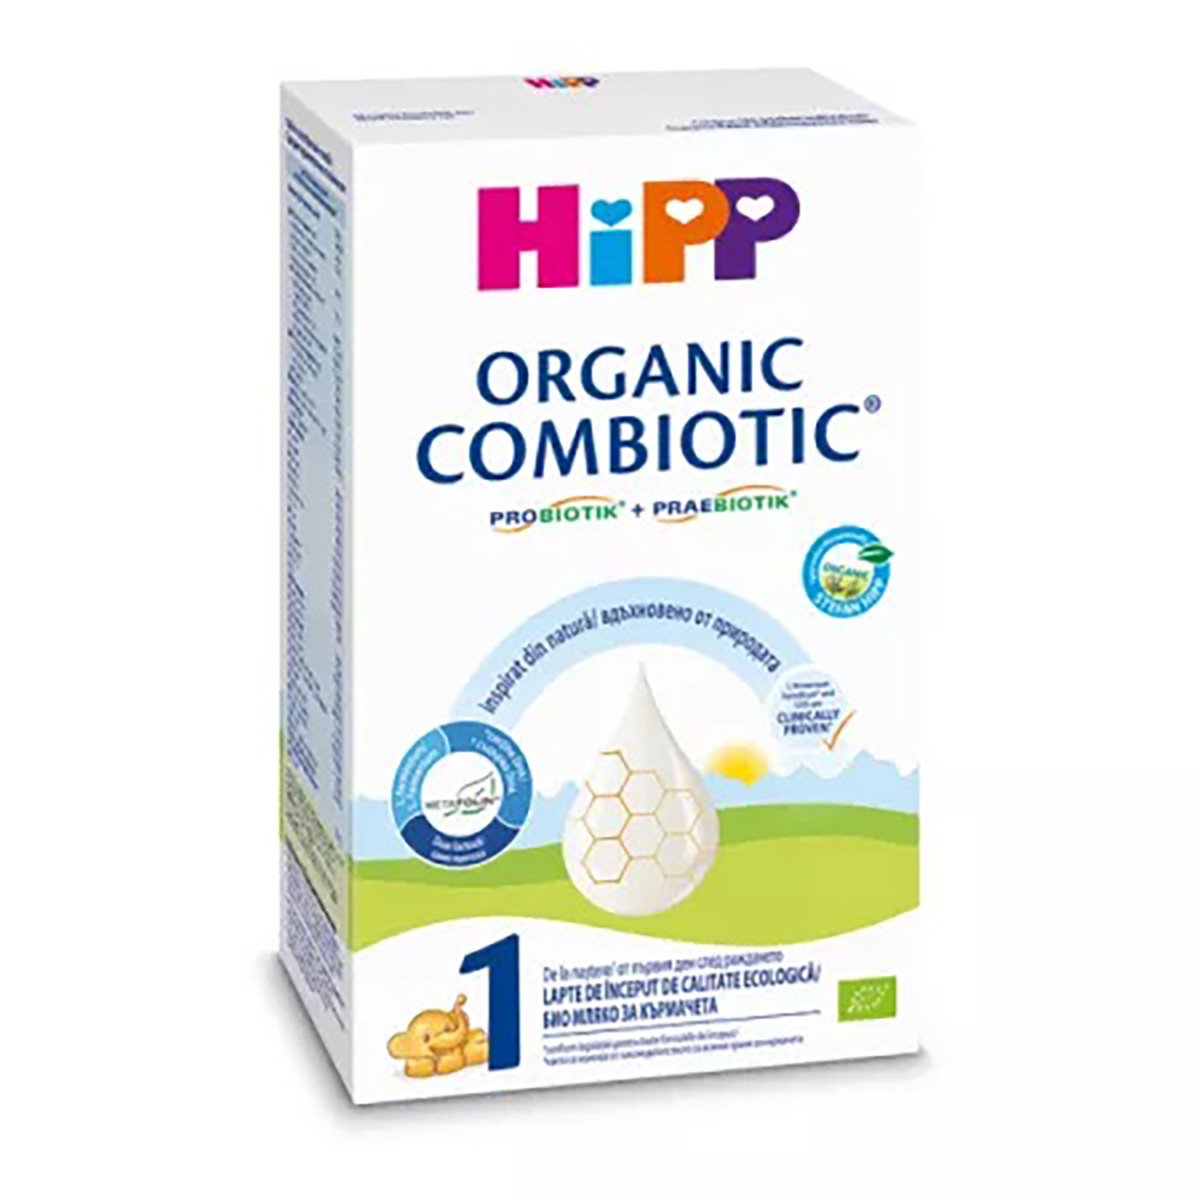 Lapte praf de inceput HiPP 1 Combiotic, 300g